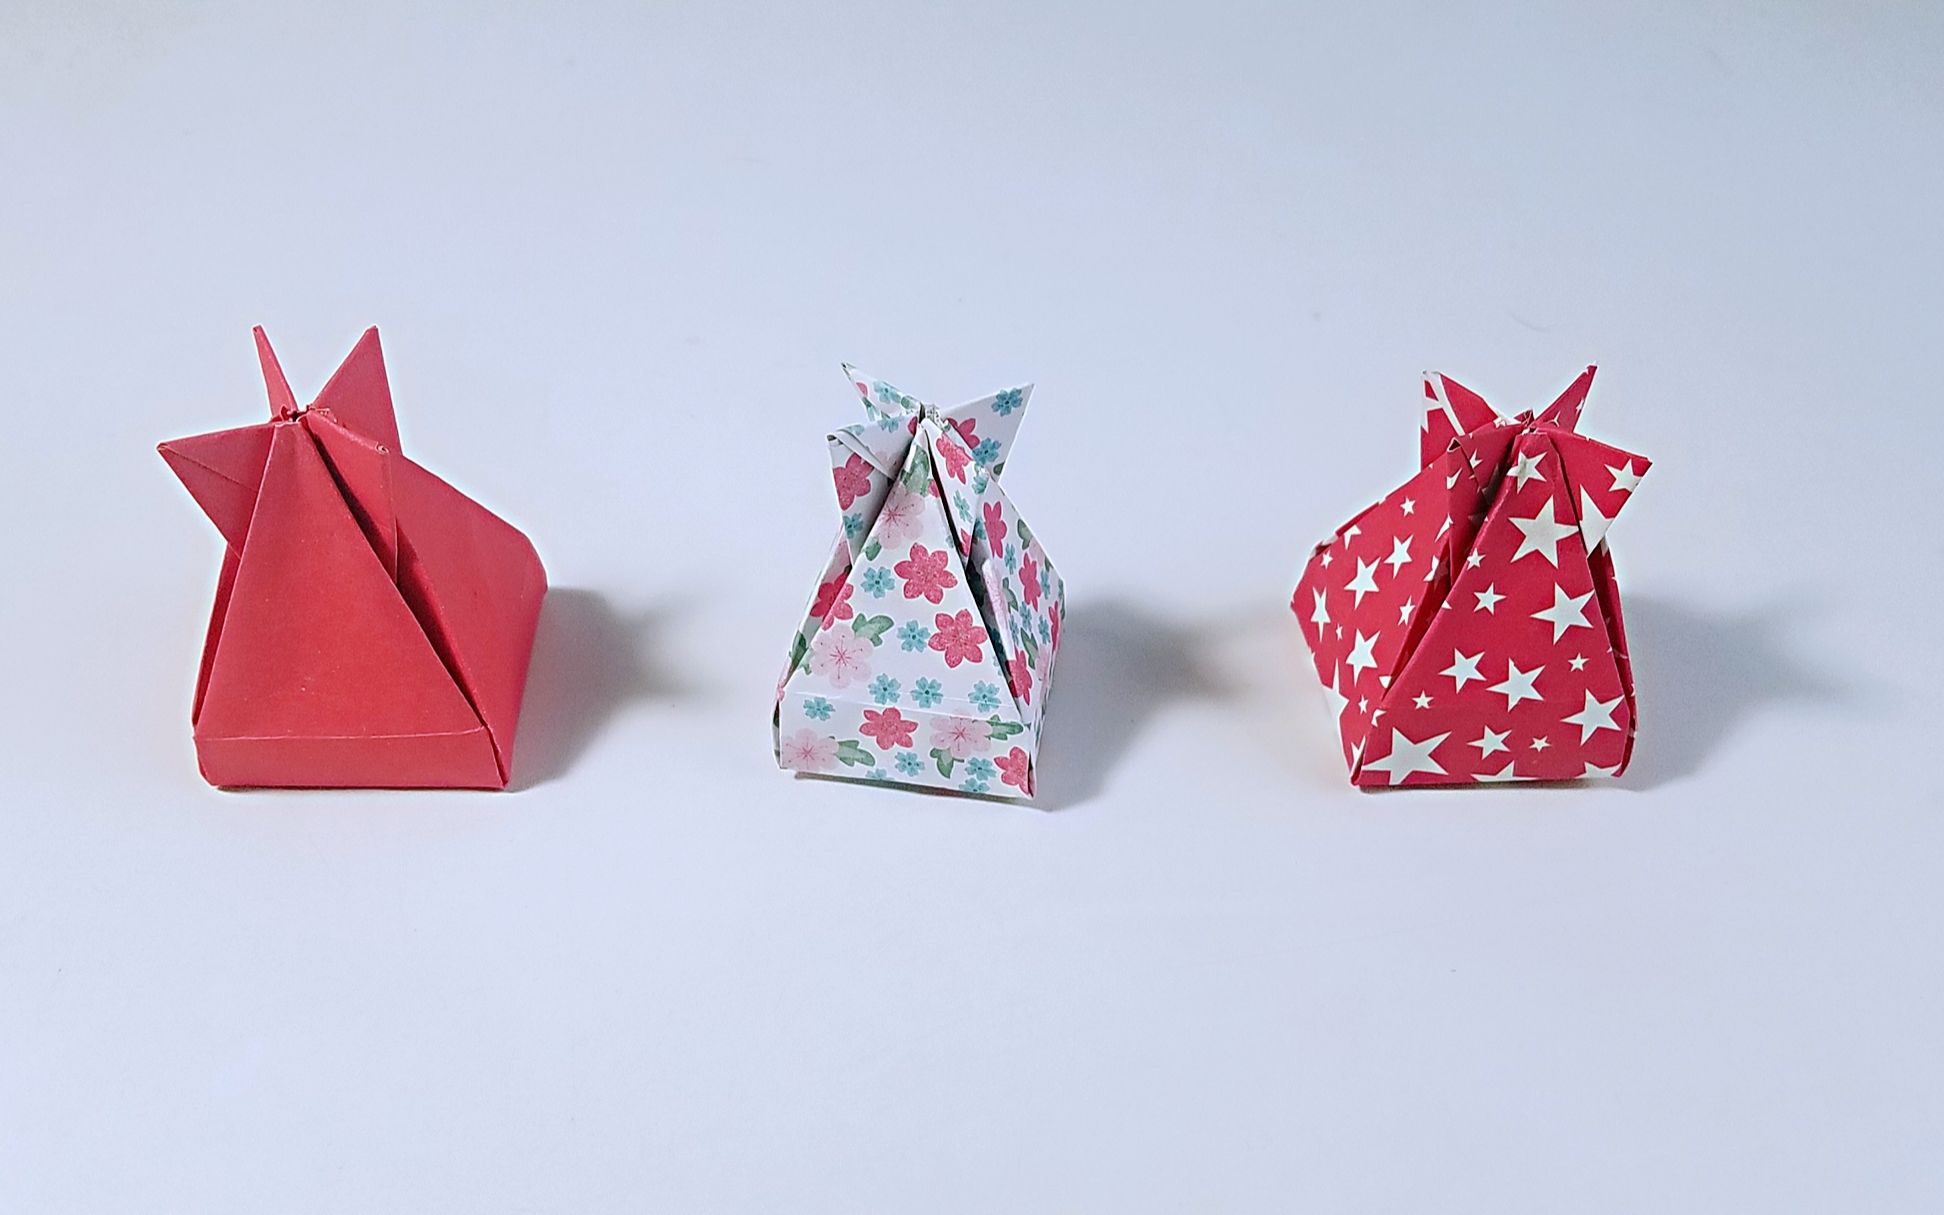 教你折纸礼品袋,简单漂亮,儿童很喜欢